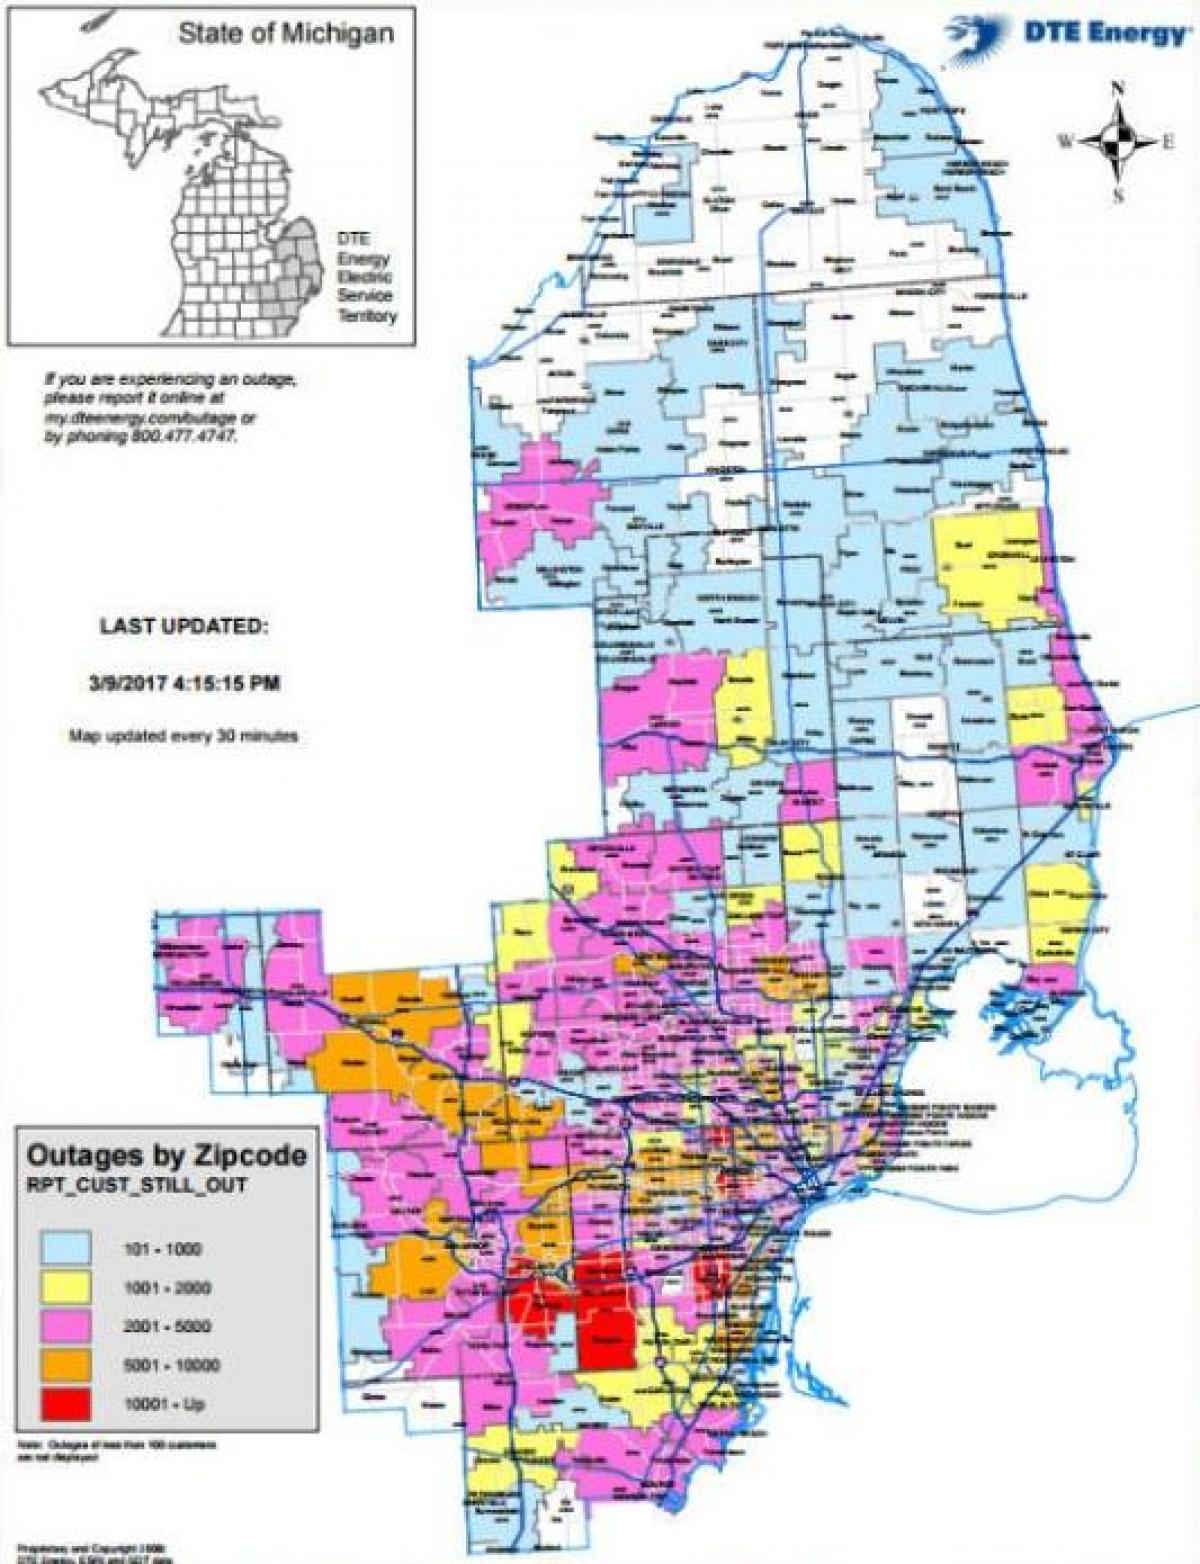 Detroit edison interruzione dell'alimentazione mappa